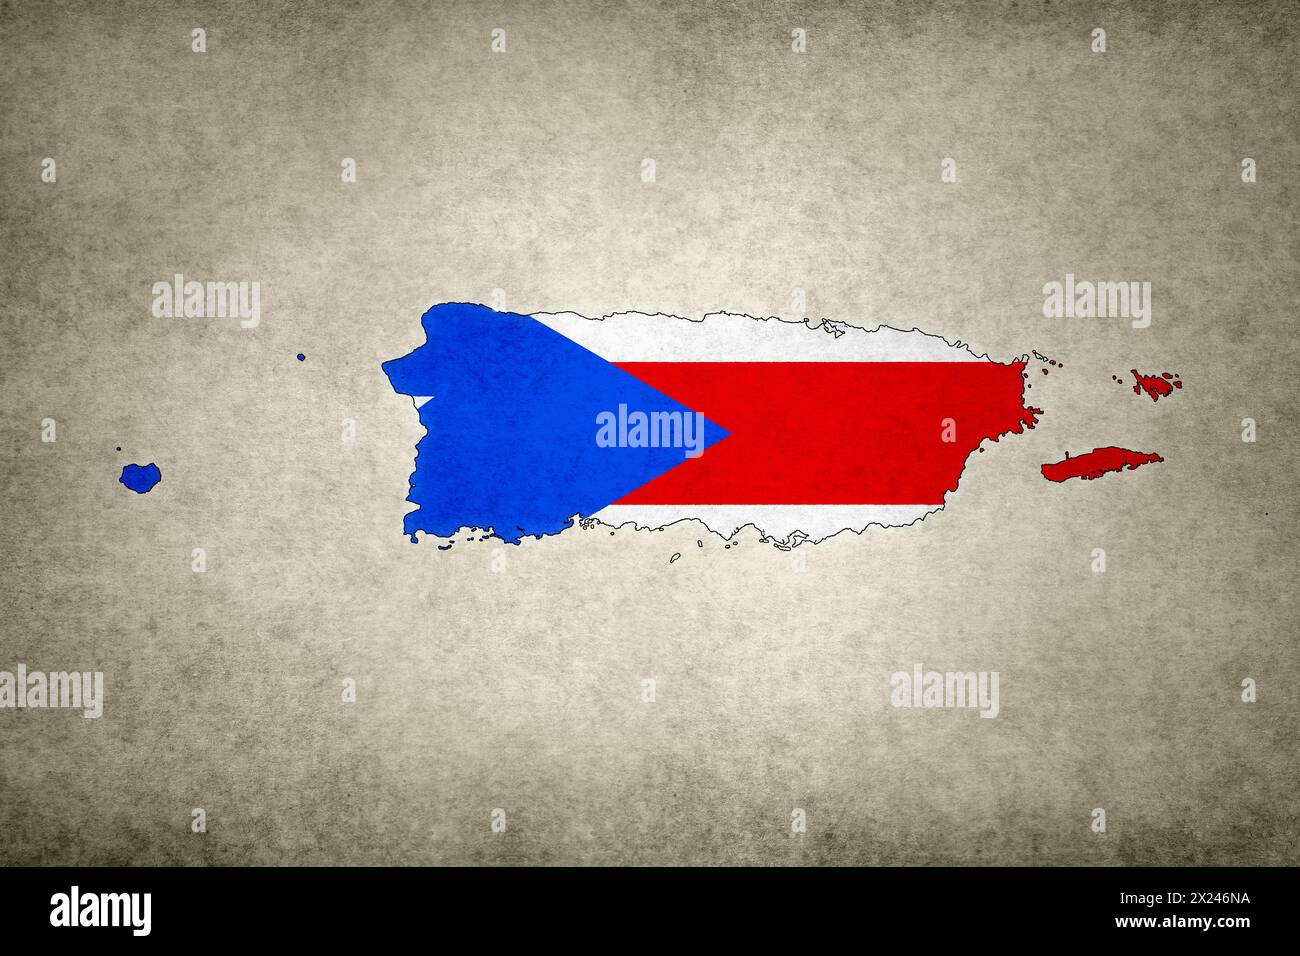 Mappa grunge di Porto Rico con la sua bandiera stampata all'interno del suo confine su una vecchia carta. Foto Stock